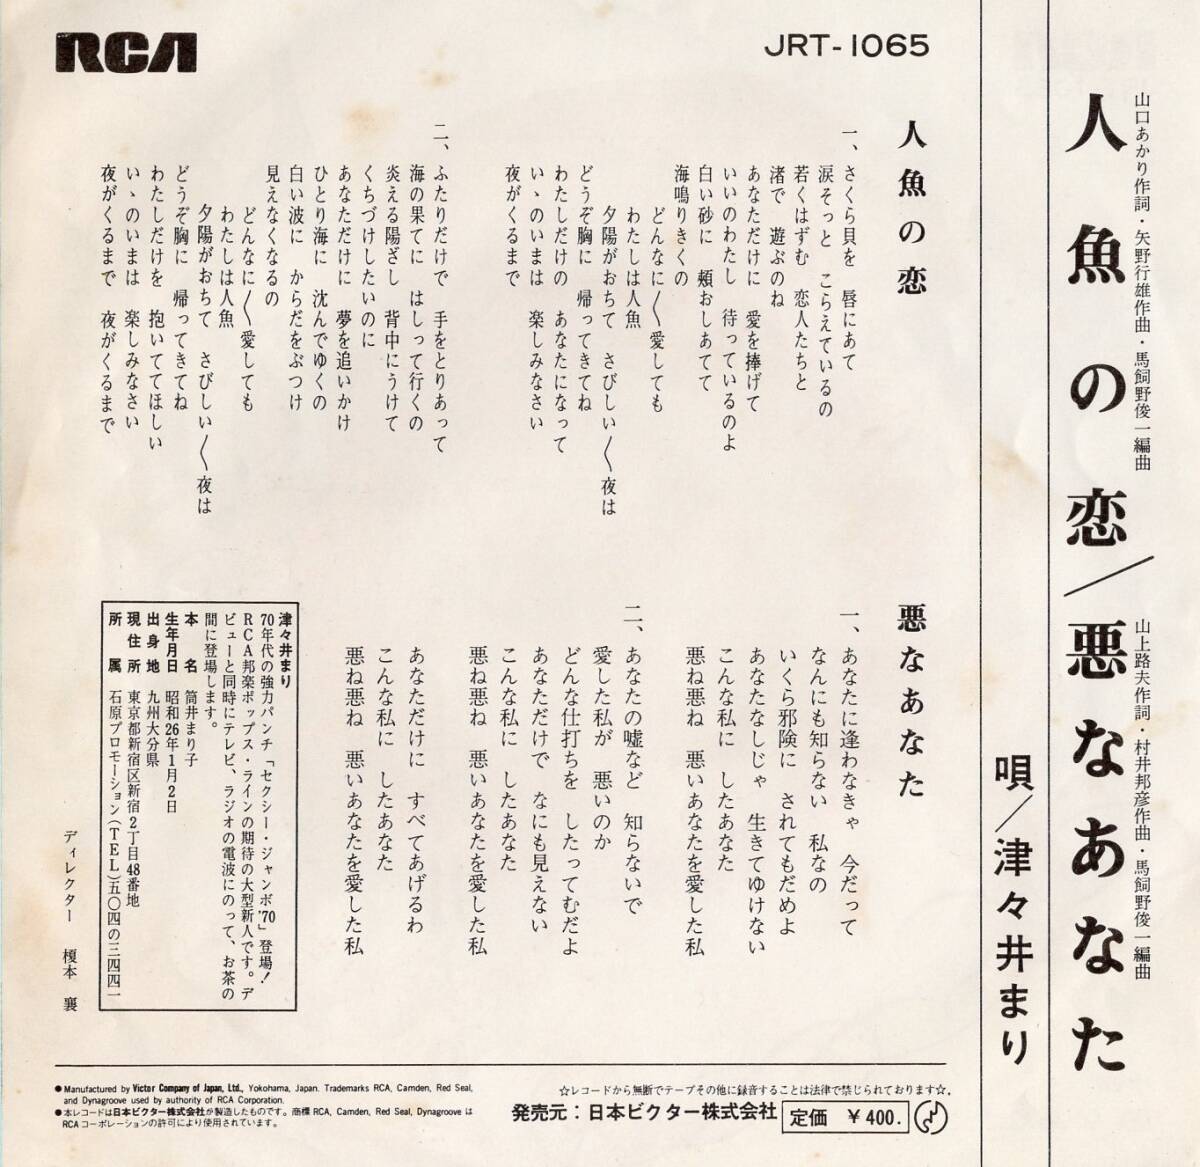 1970年昭和45年 津々井まり 人魚の恋 シングルレコード JRT-1065 昭和歌謡 和モノ?_画像2